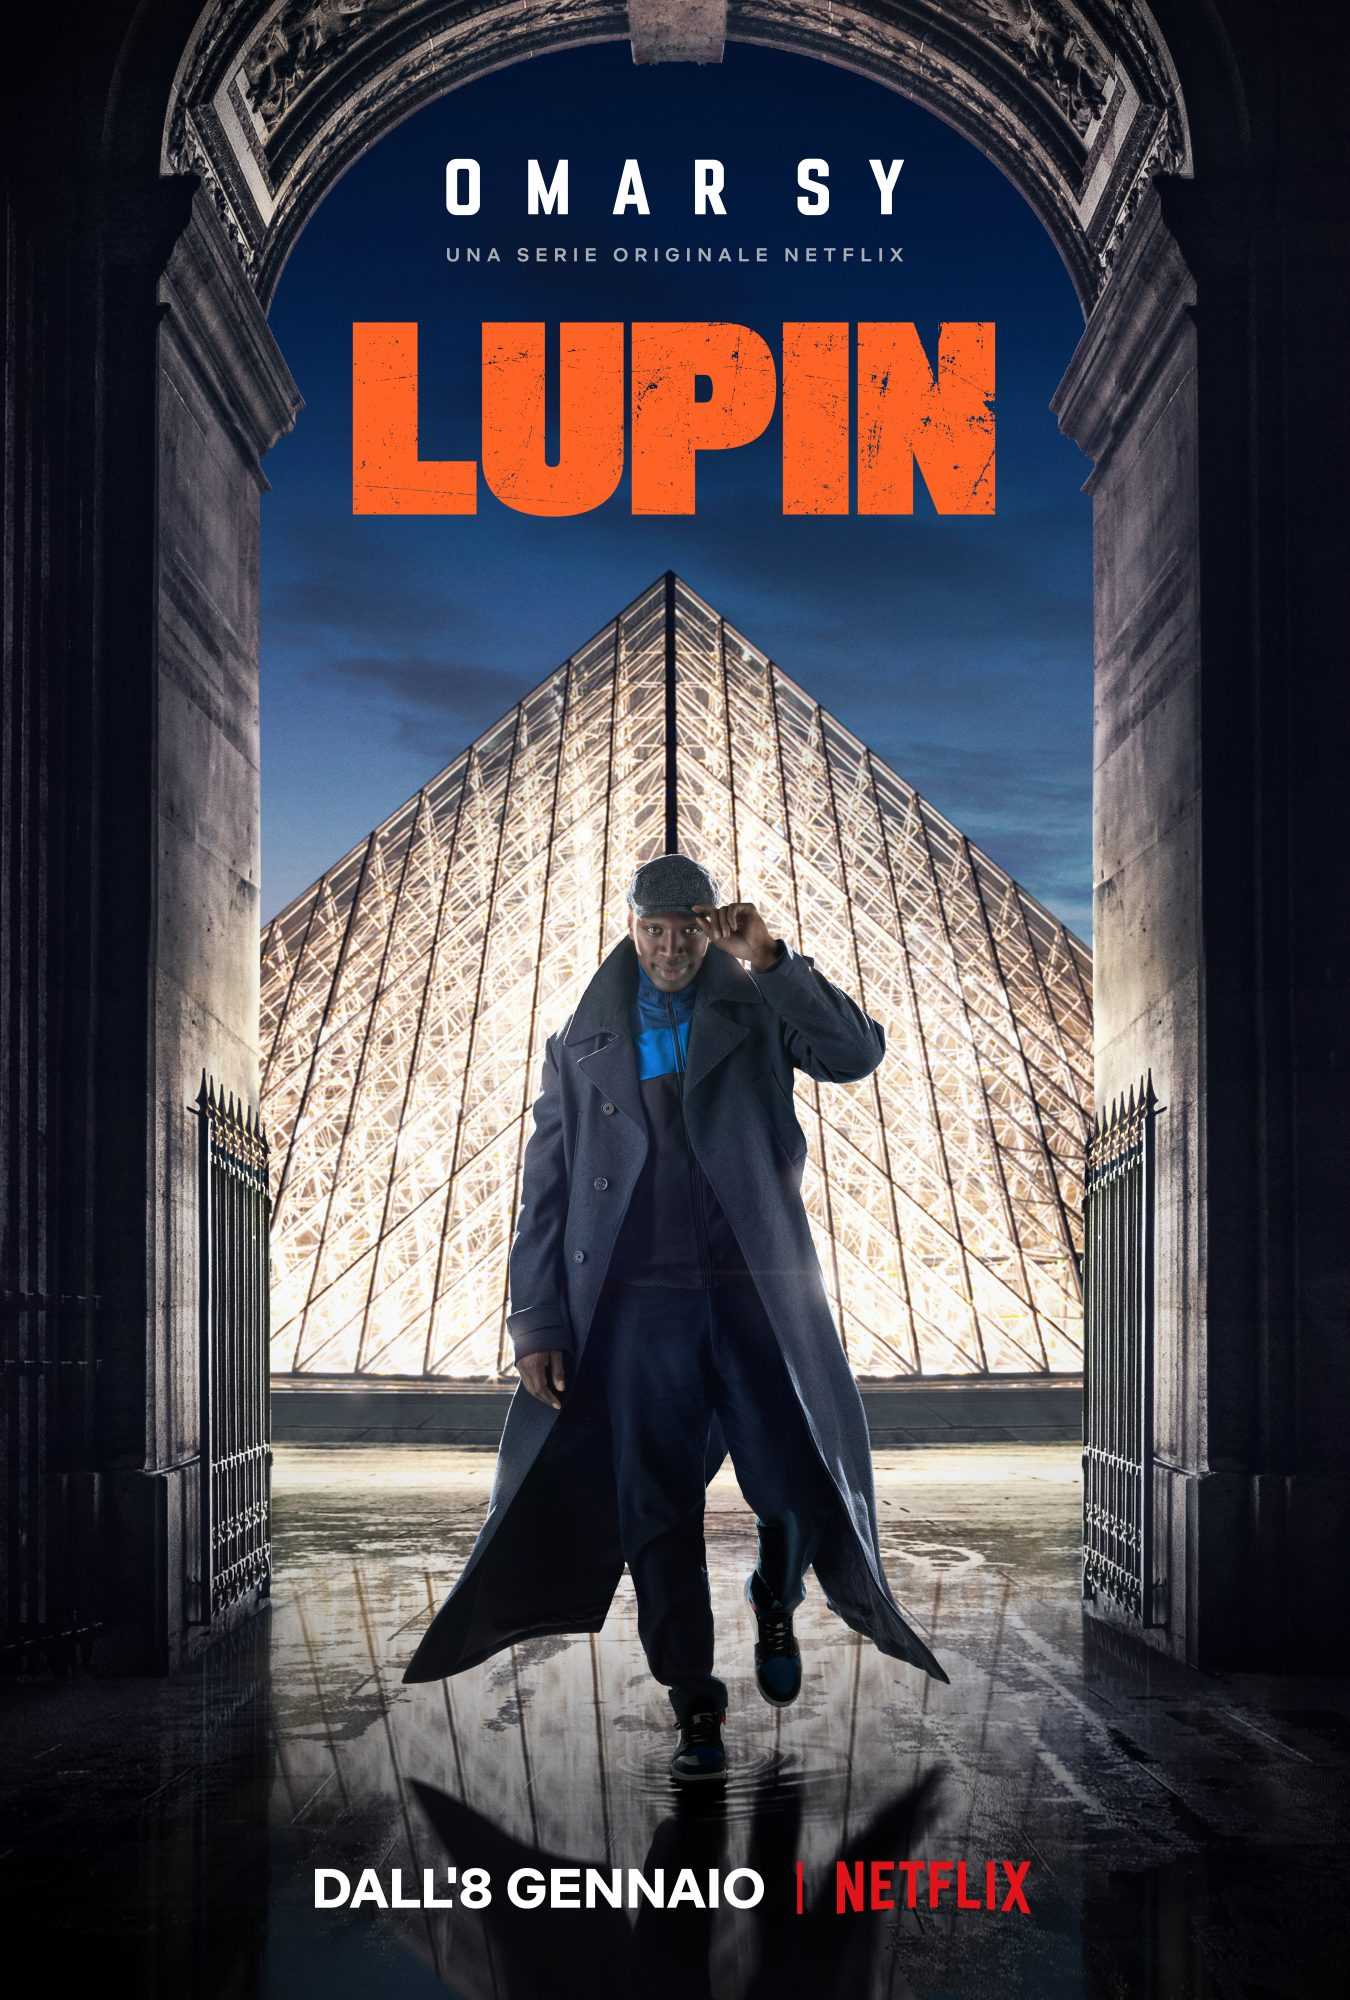 Lupin: trailer, poster e foto promozionali della serie Netflix